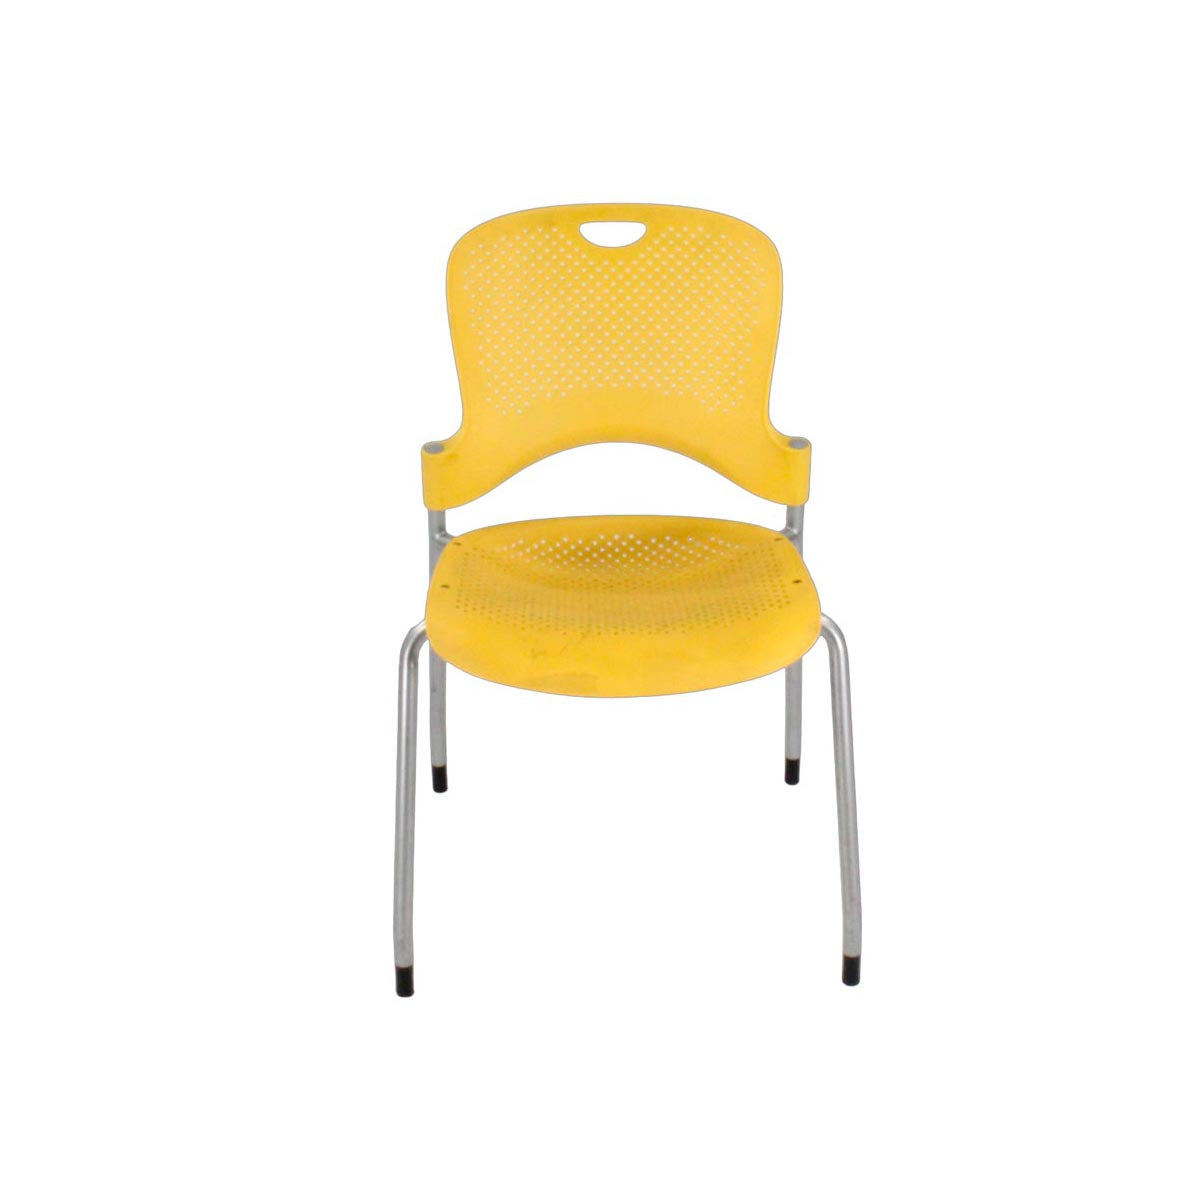 Herman Miller: Silla Caper en amarillo - Reacondicionada